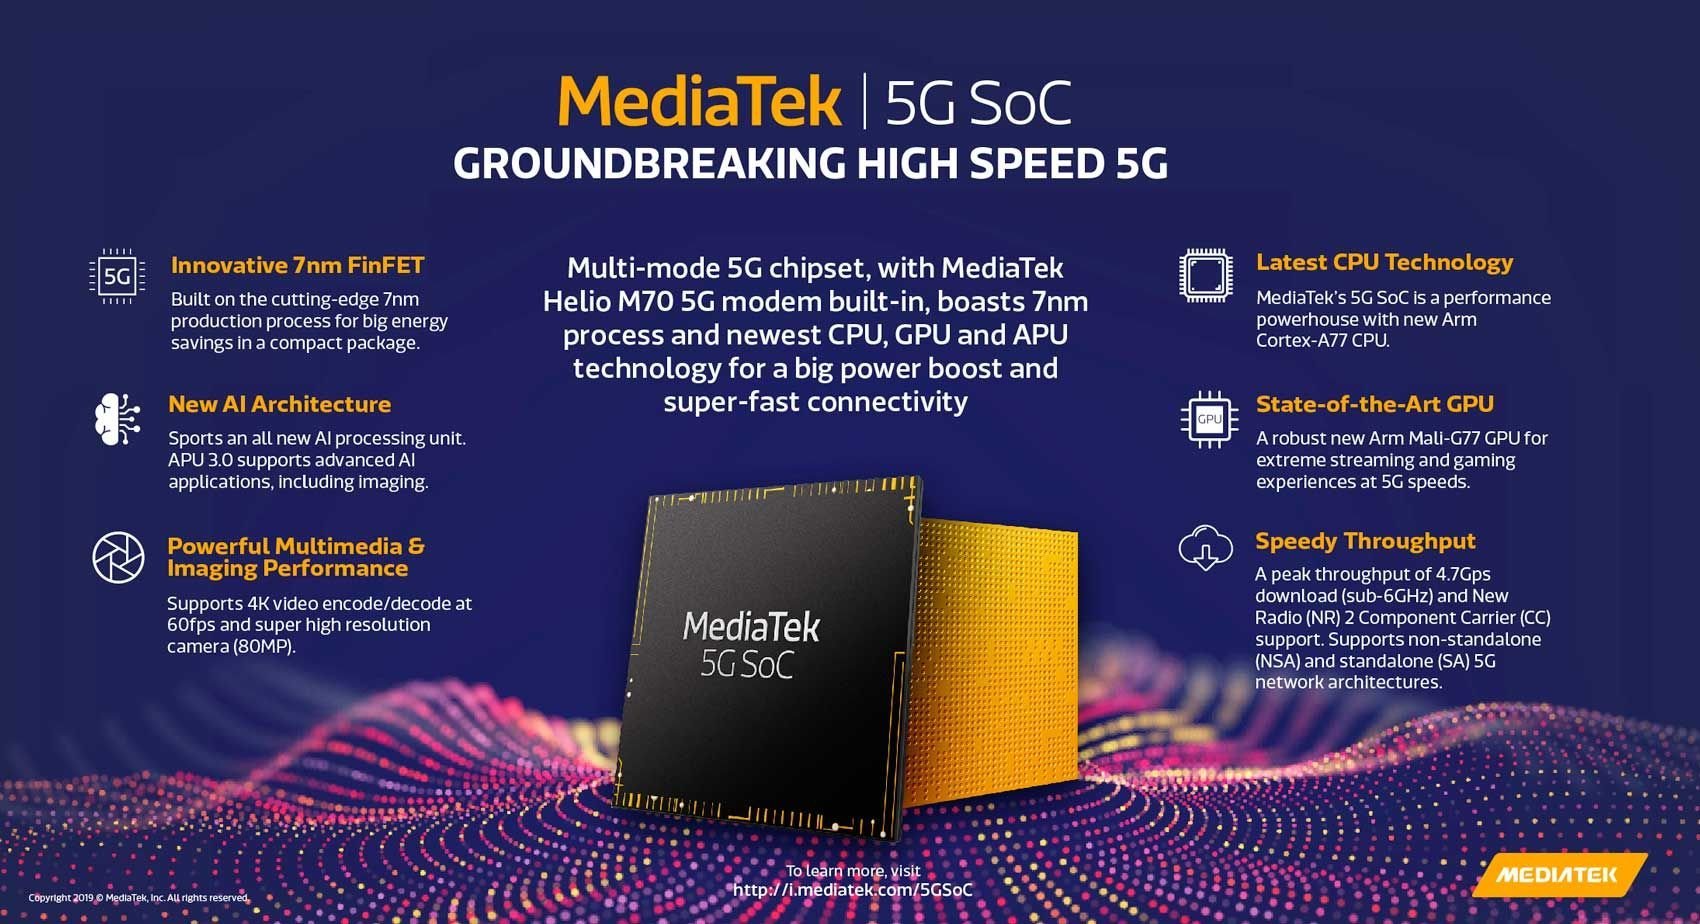 Mediatek 5G SOC